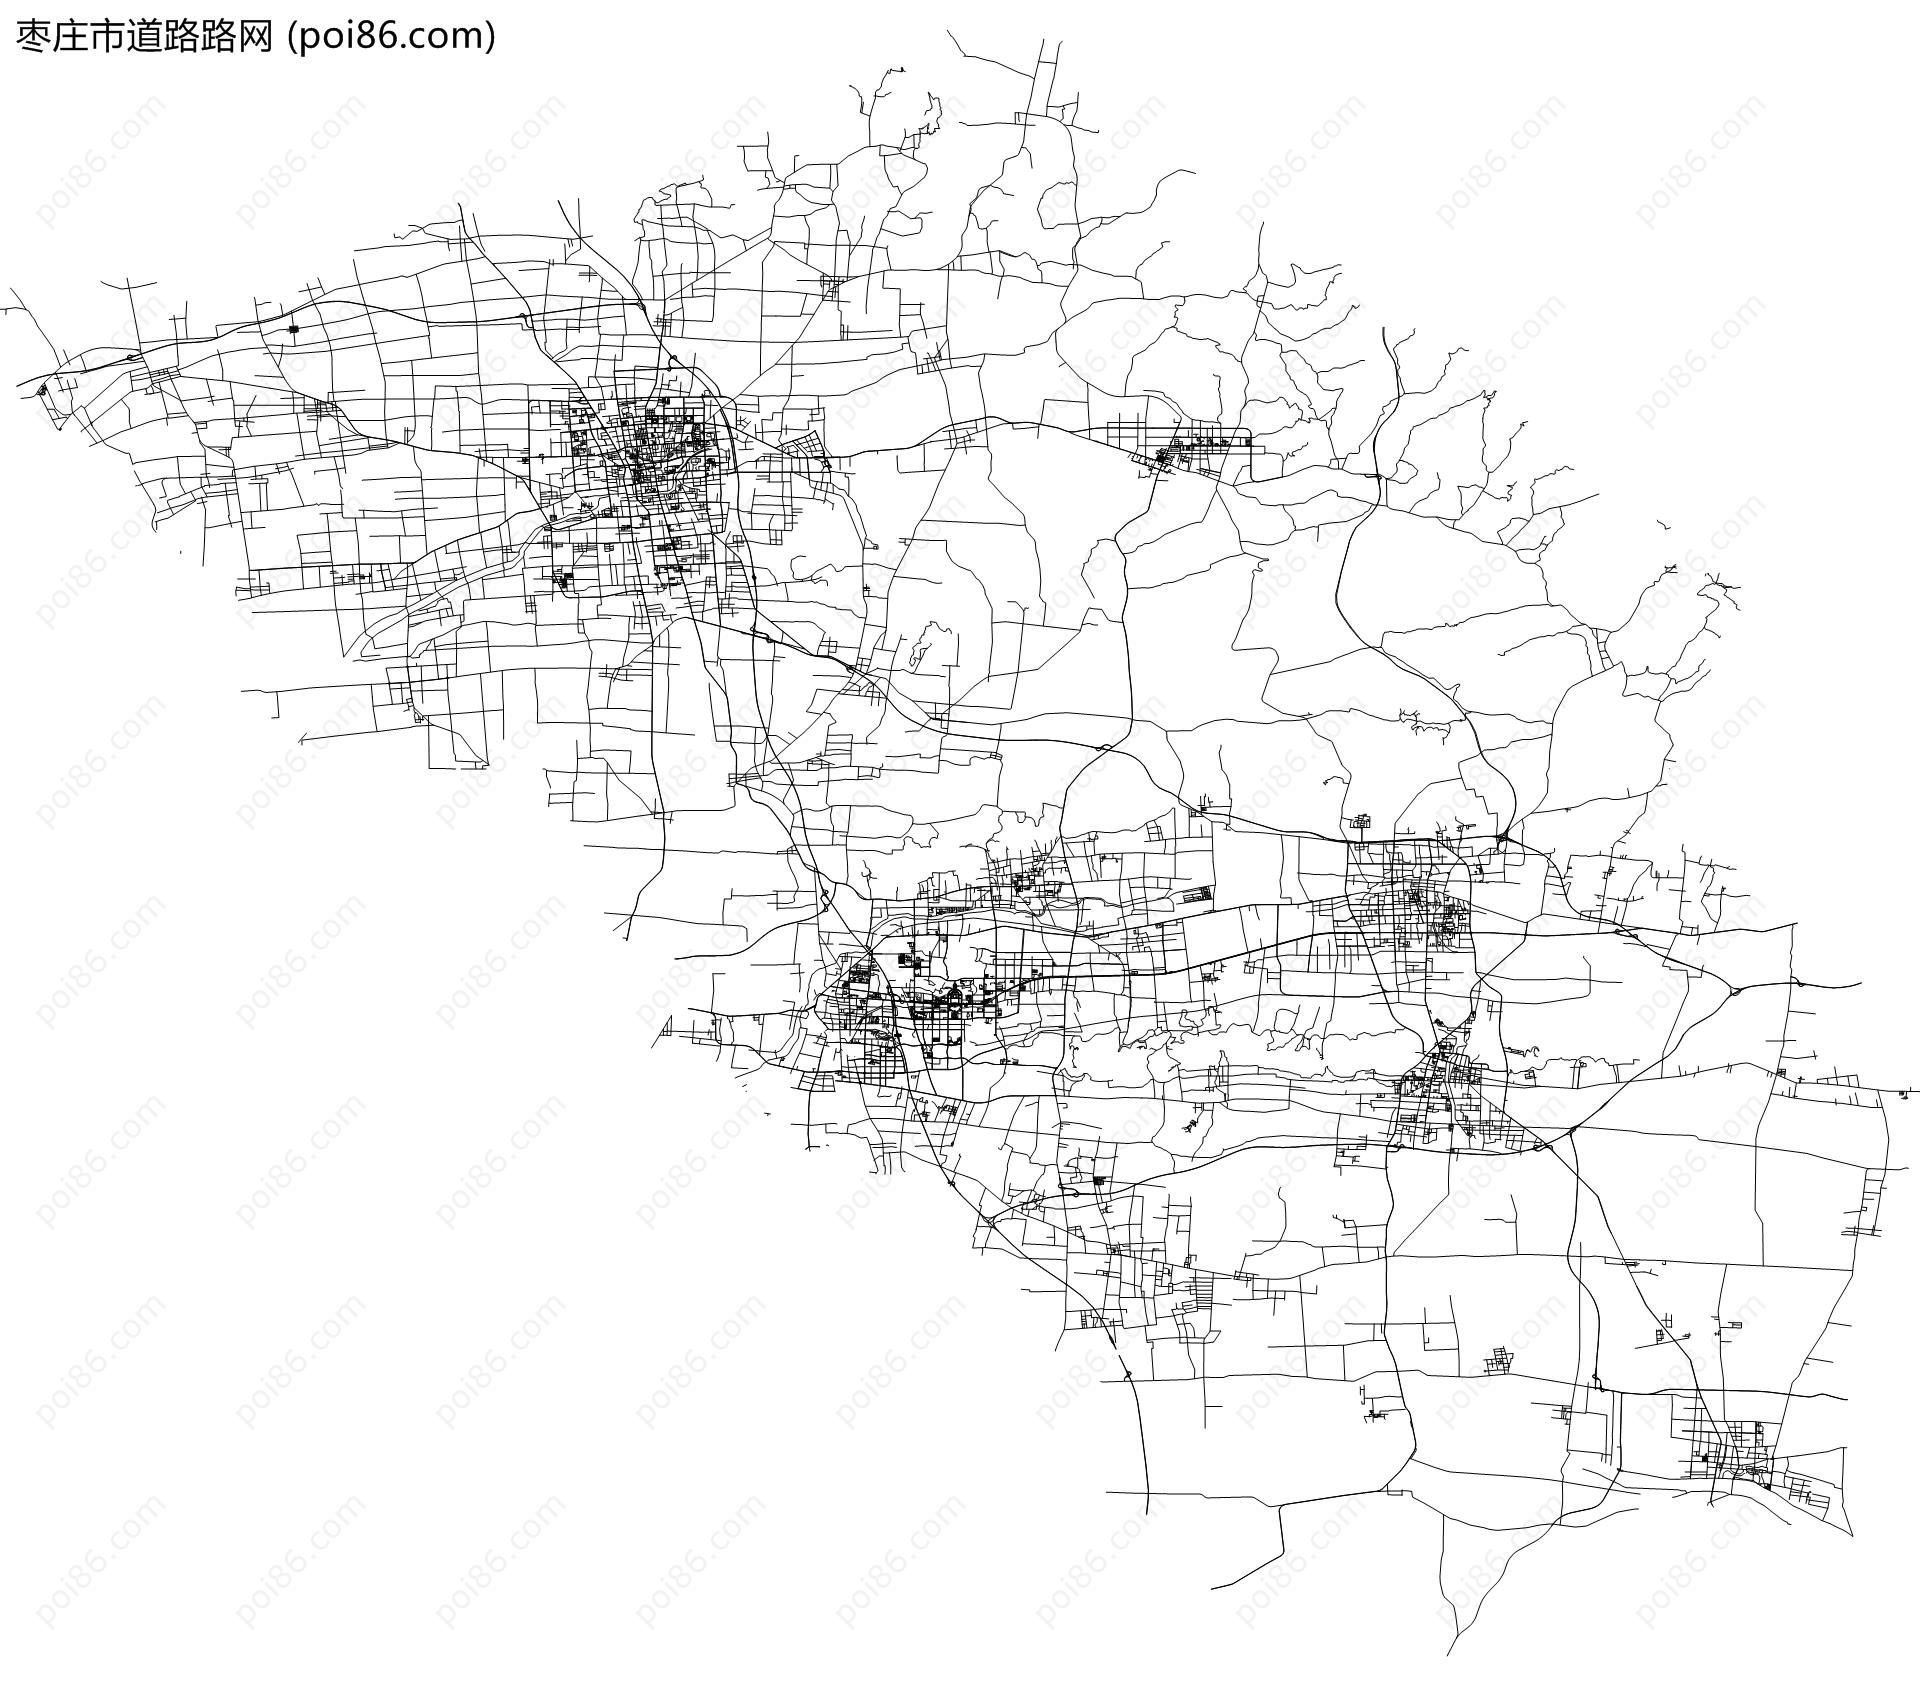 枣庄市道路路网地图